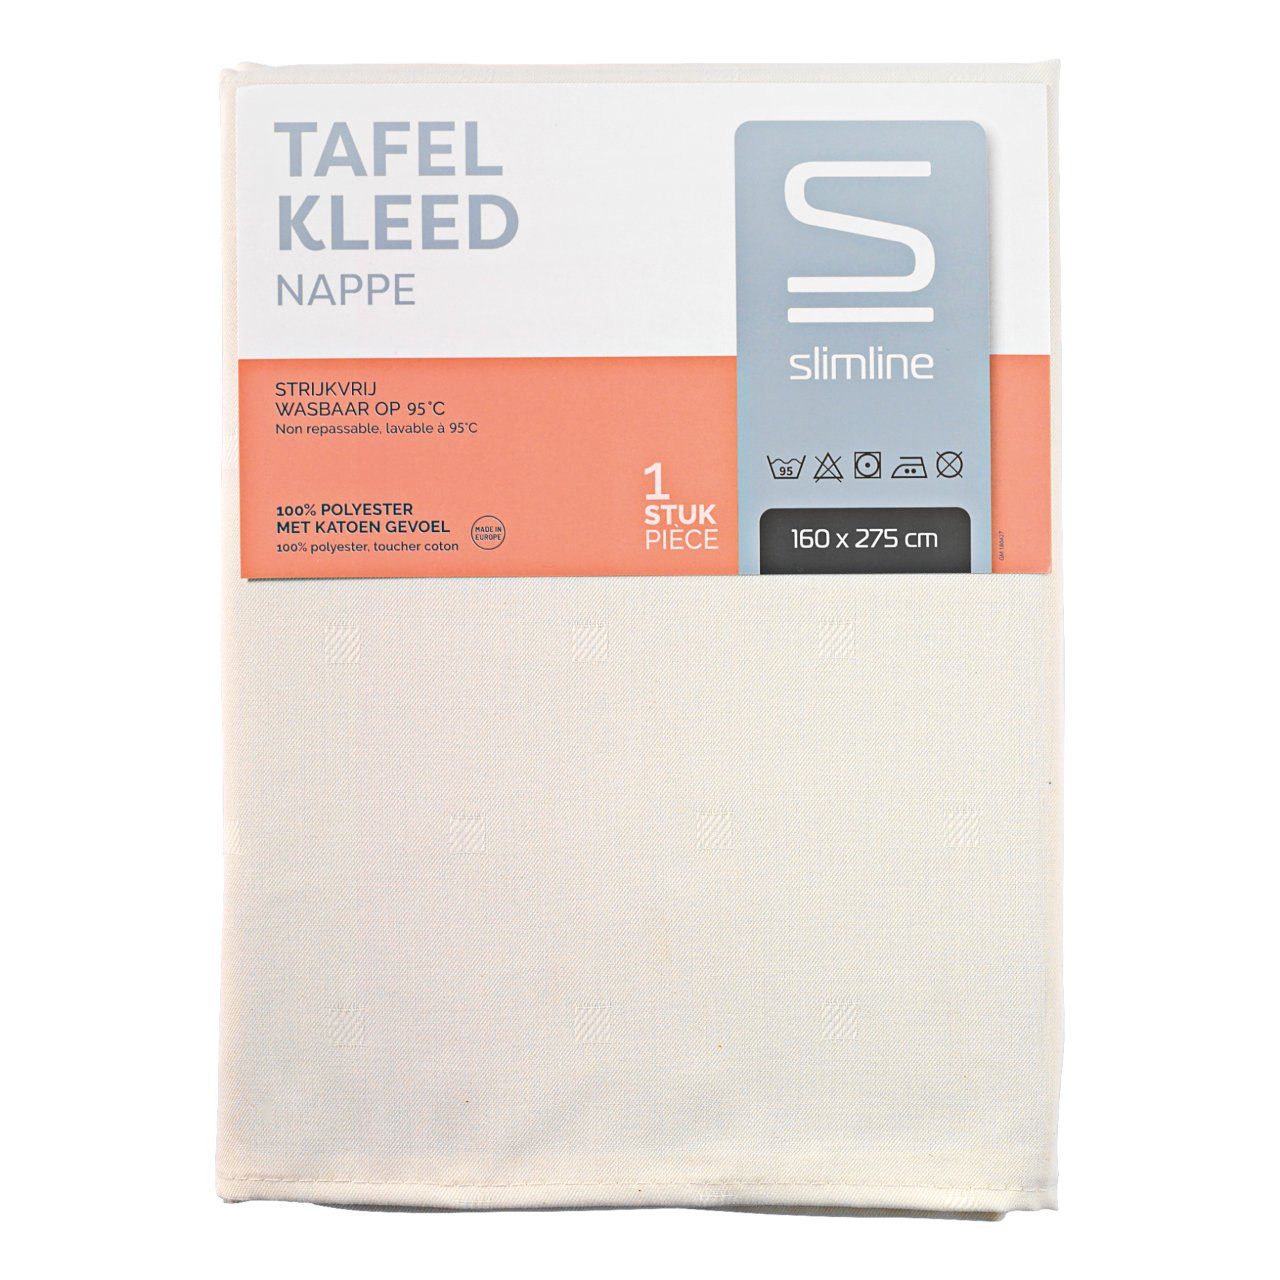 Smeltend Verrast zijn Okkernoot Slimline Premium Tafellaken Grace 160 x 275 cm, ivoor Per stuk | dekweker.nl